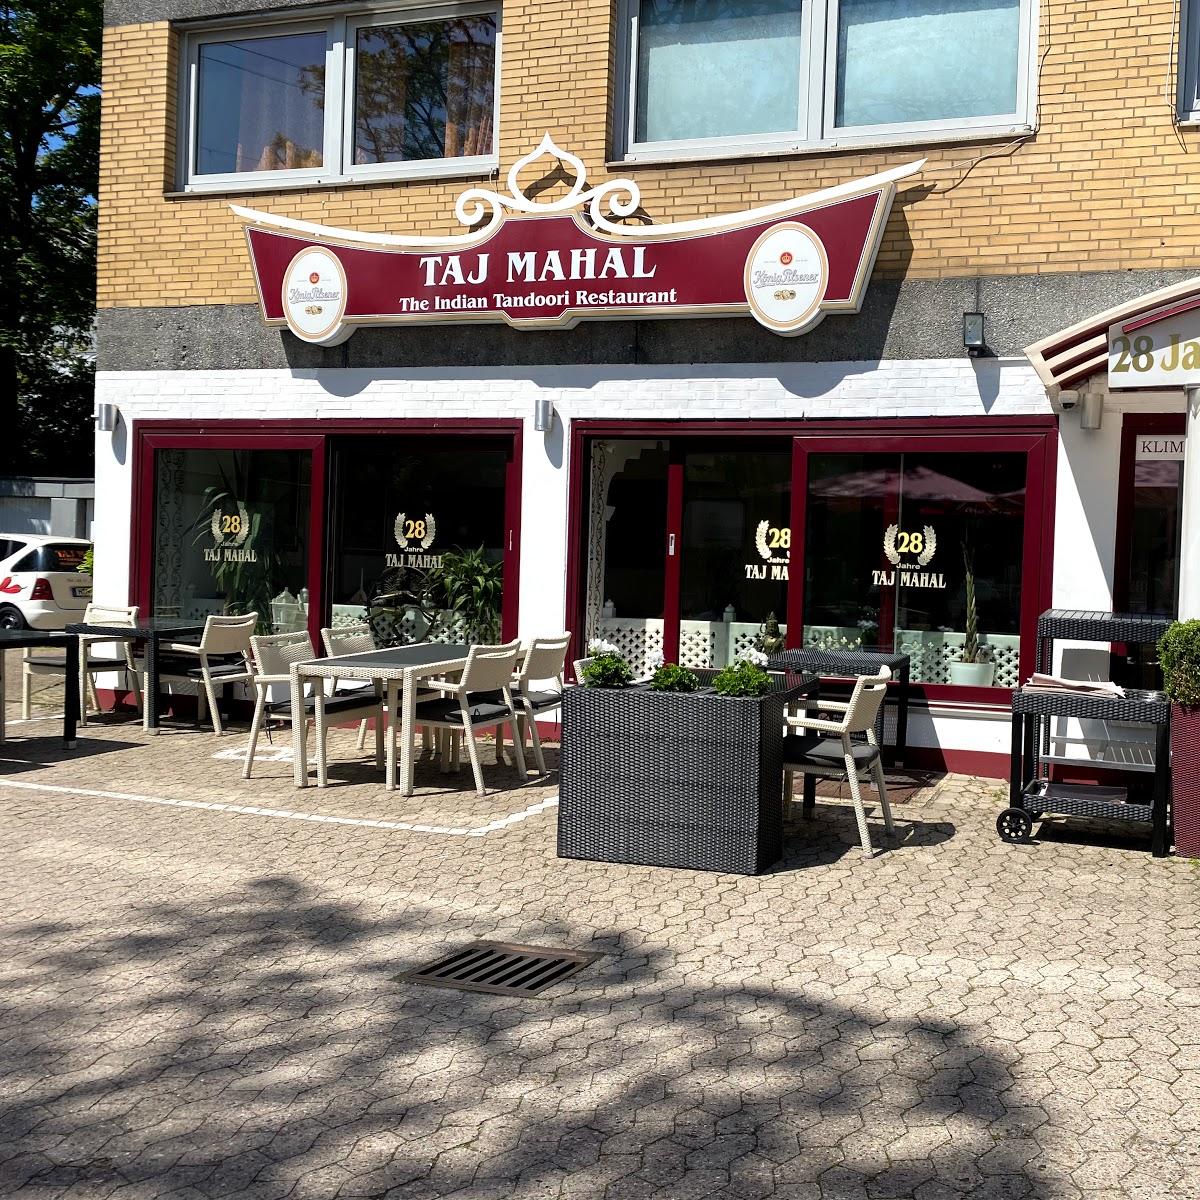 Restaurant "Taj Mahal" in Hannover